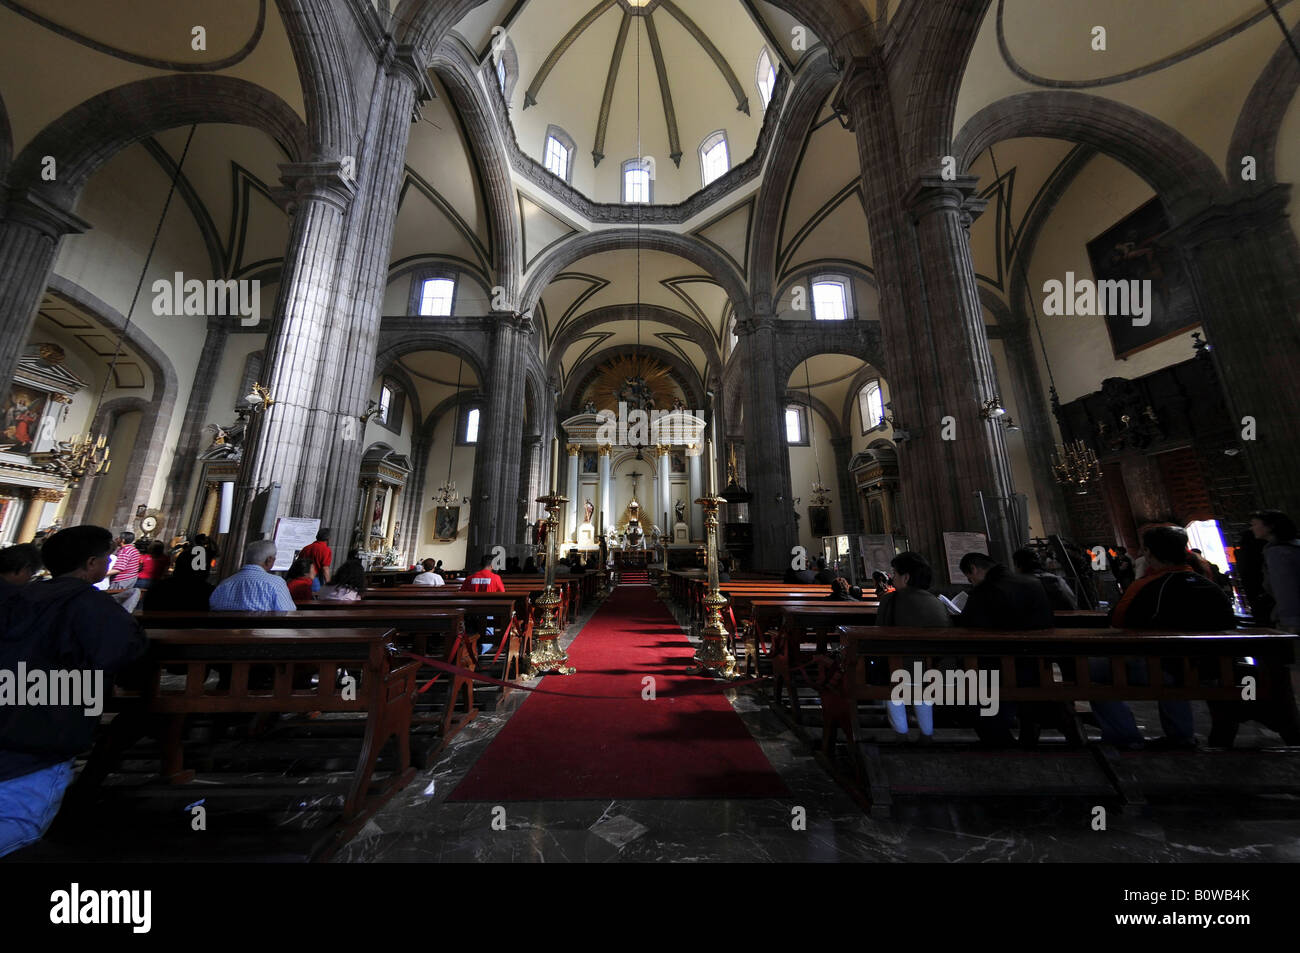 Interior, Sagrario Metropolitano, Metropolitan Cathedral, Zocalo, Mexico City, Mexico, Central America Stock Photo